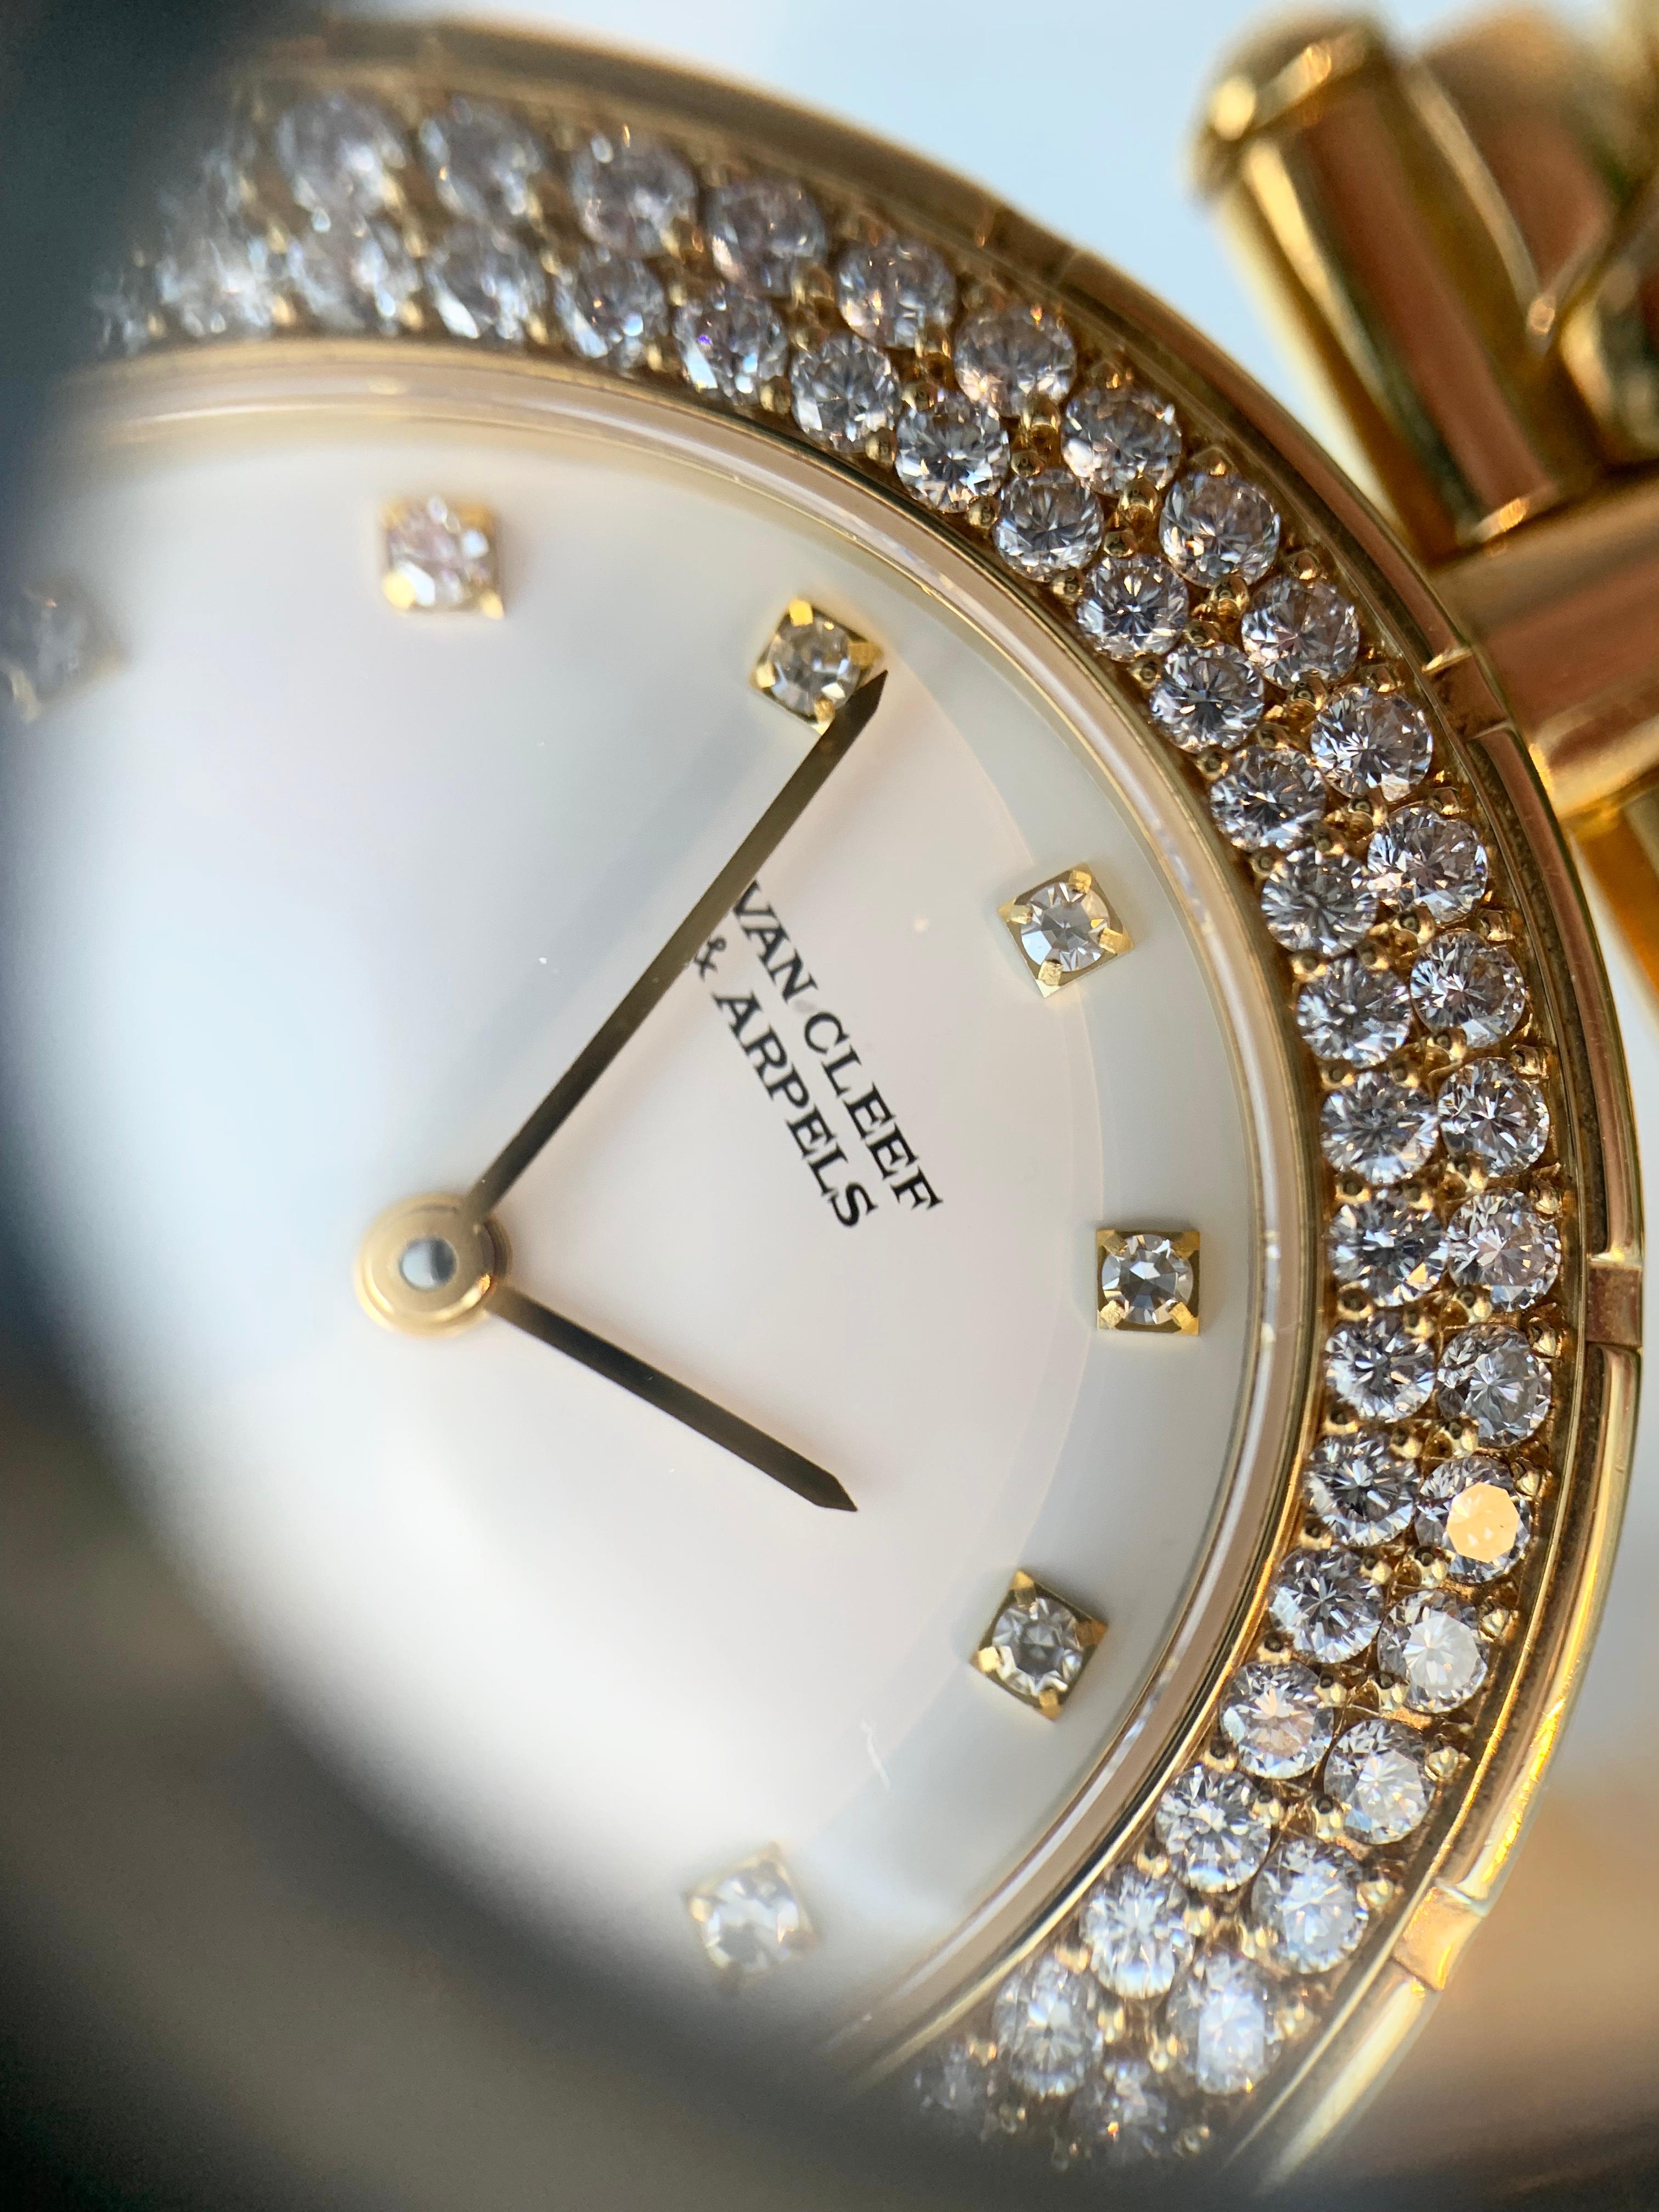 18 Karat Yellow Gold Van Cleef & Arpels Classique Watch with Diamonds 3